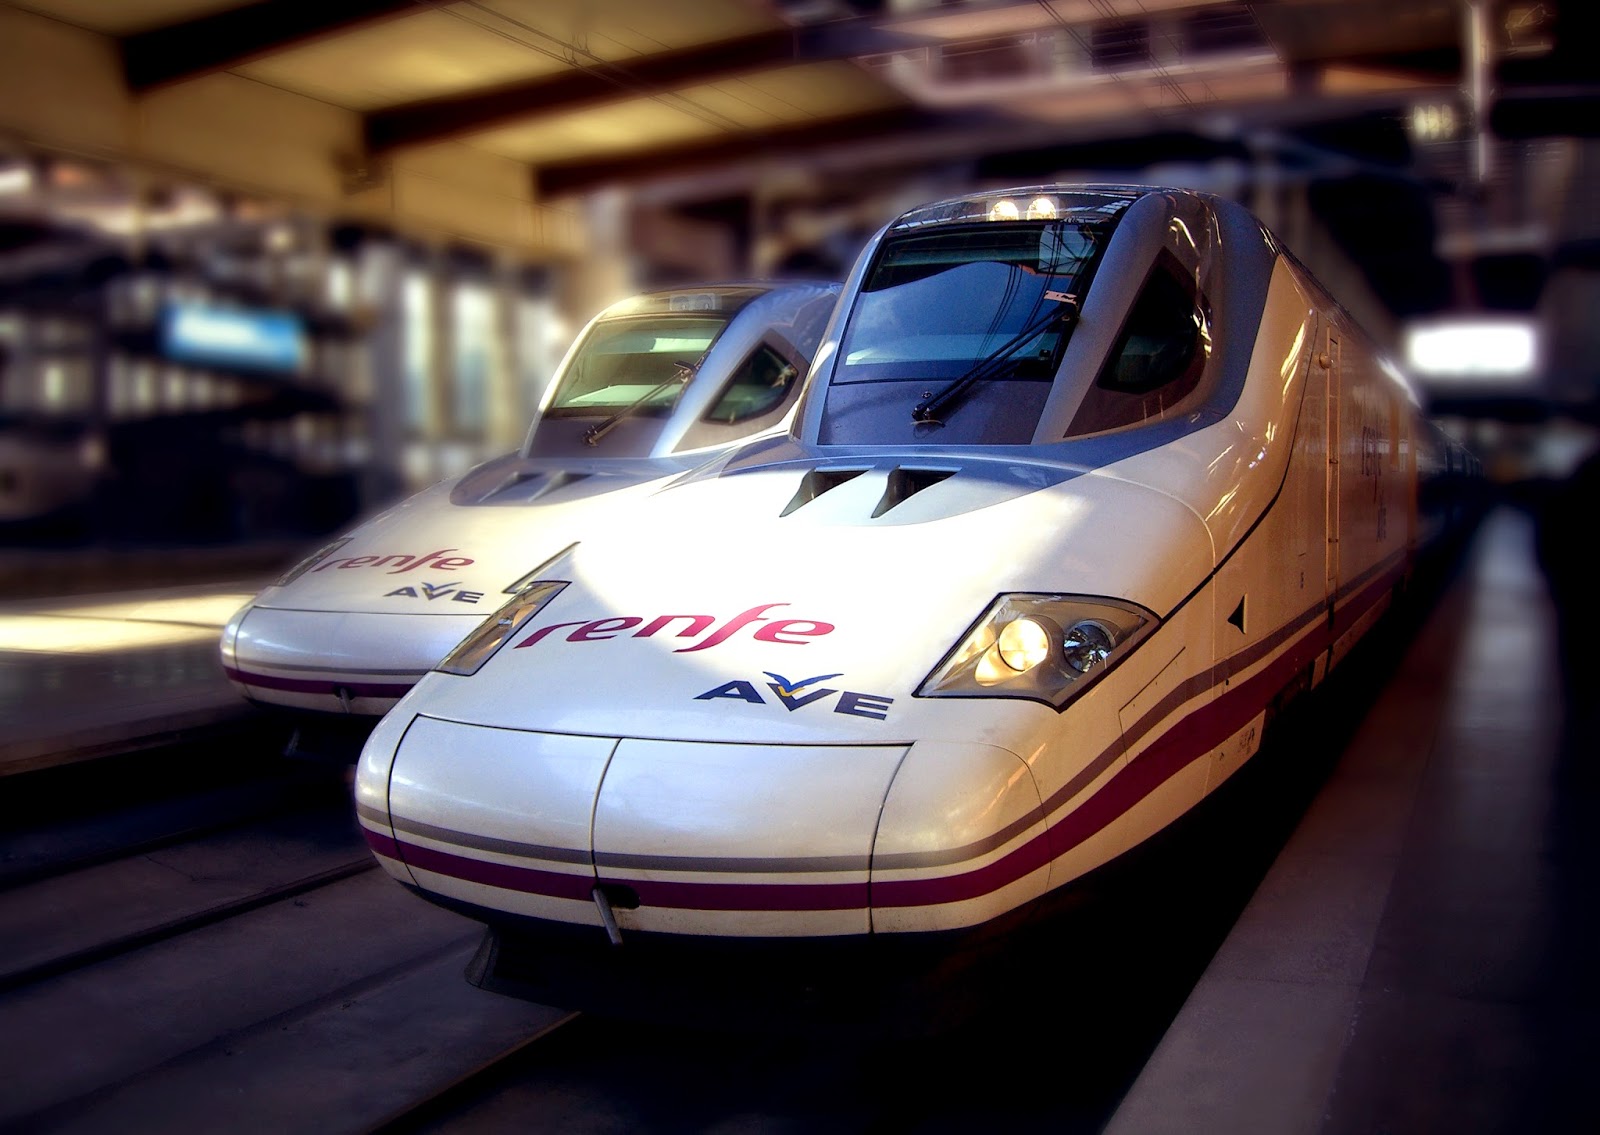 AVE Talgo-350 - 10 kereta api paling cepat di dunia